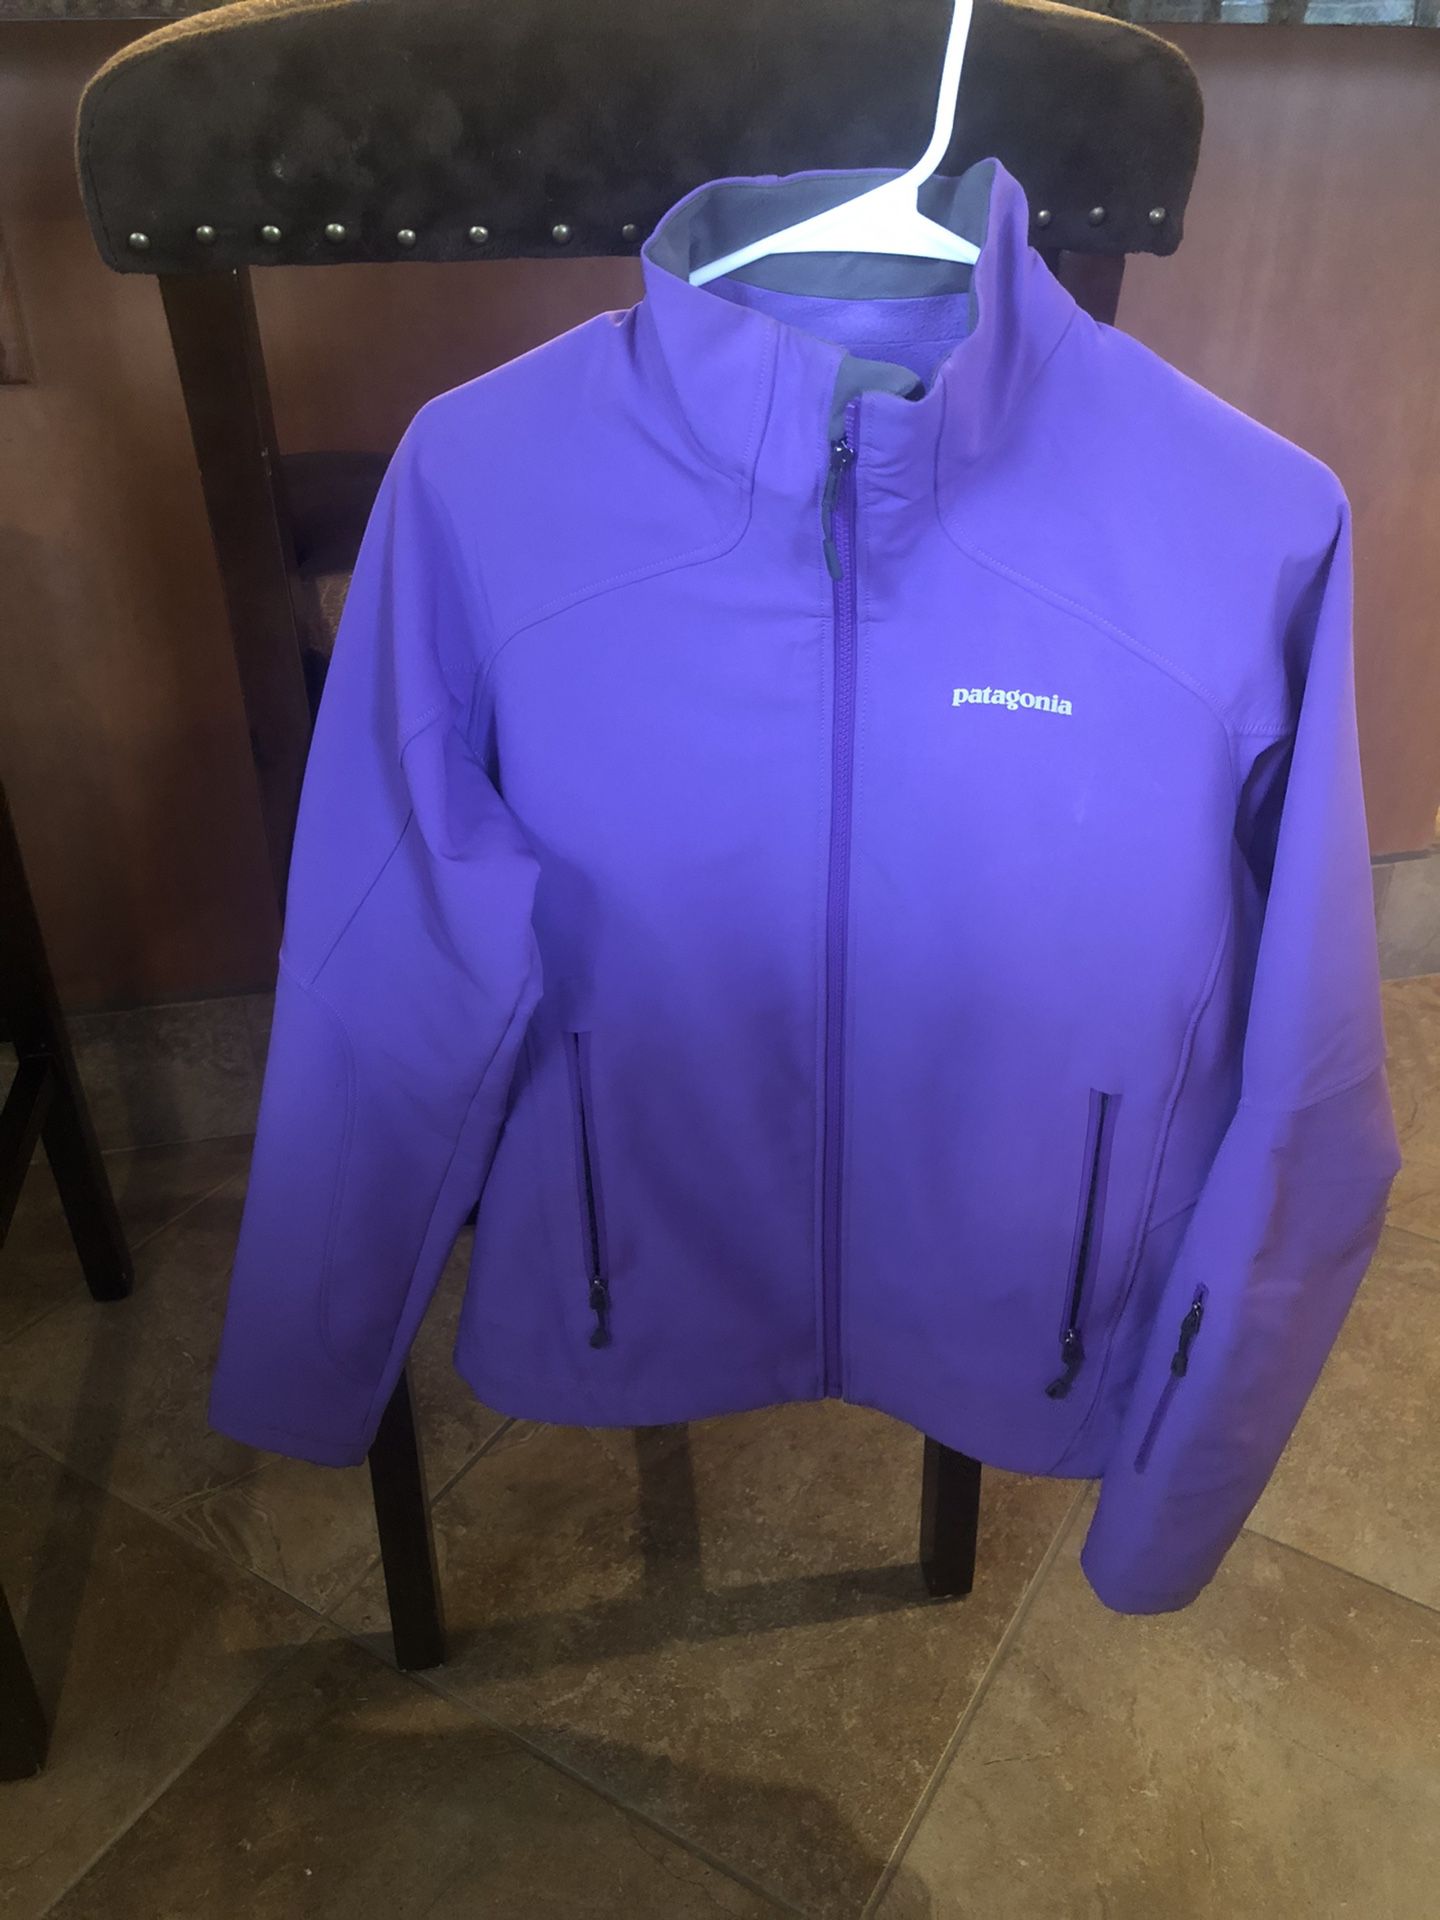 Patagonia women’s jacket- purple